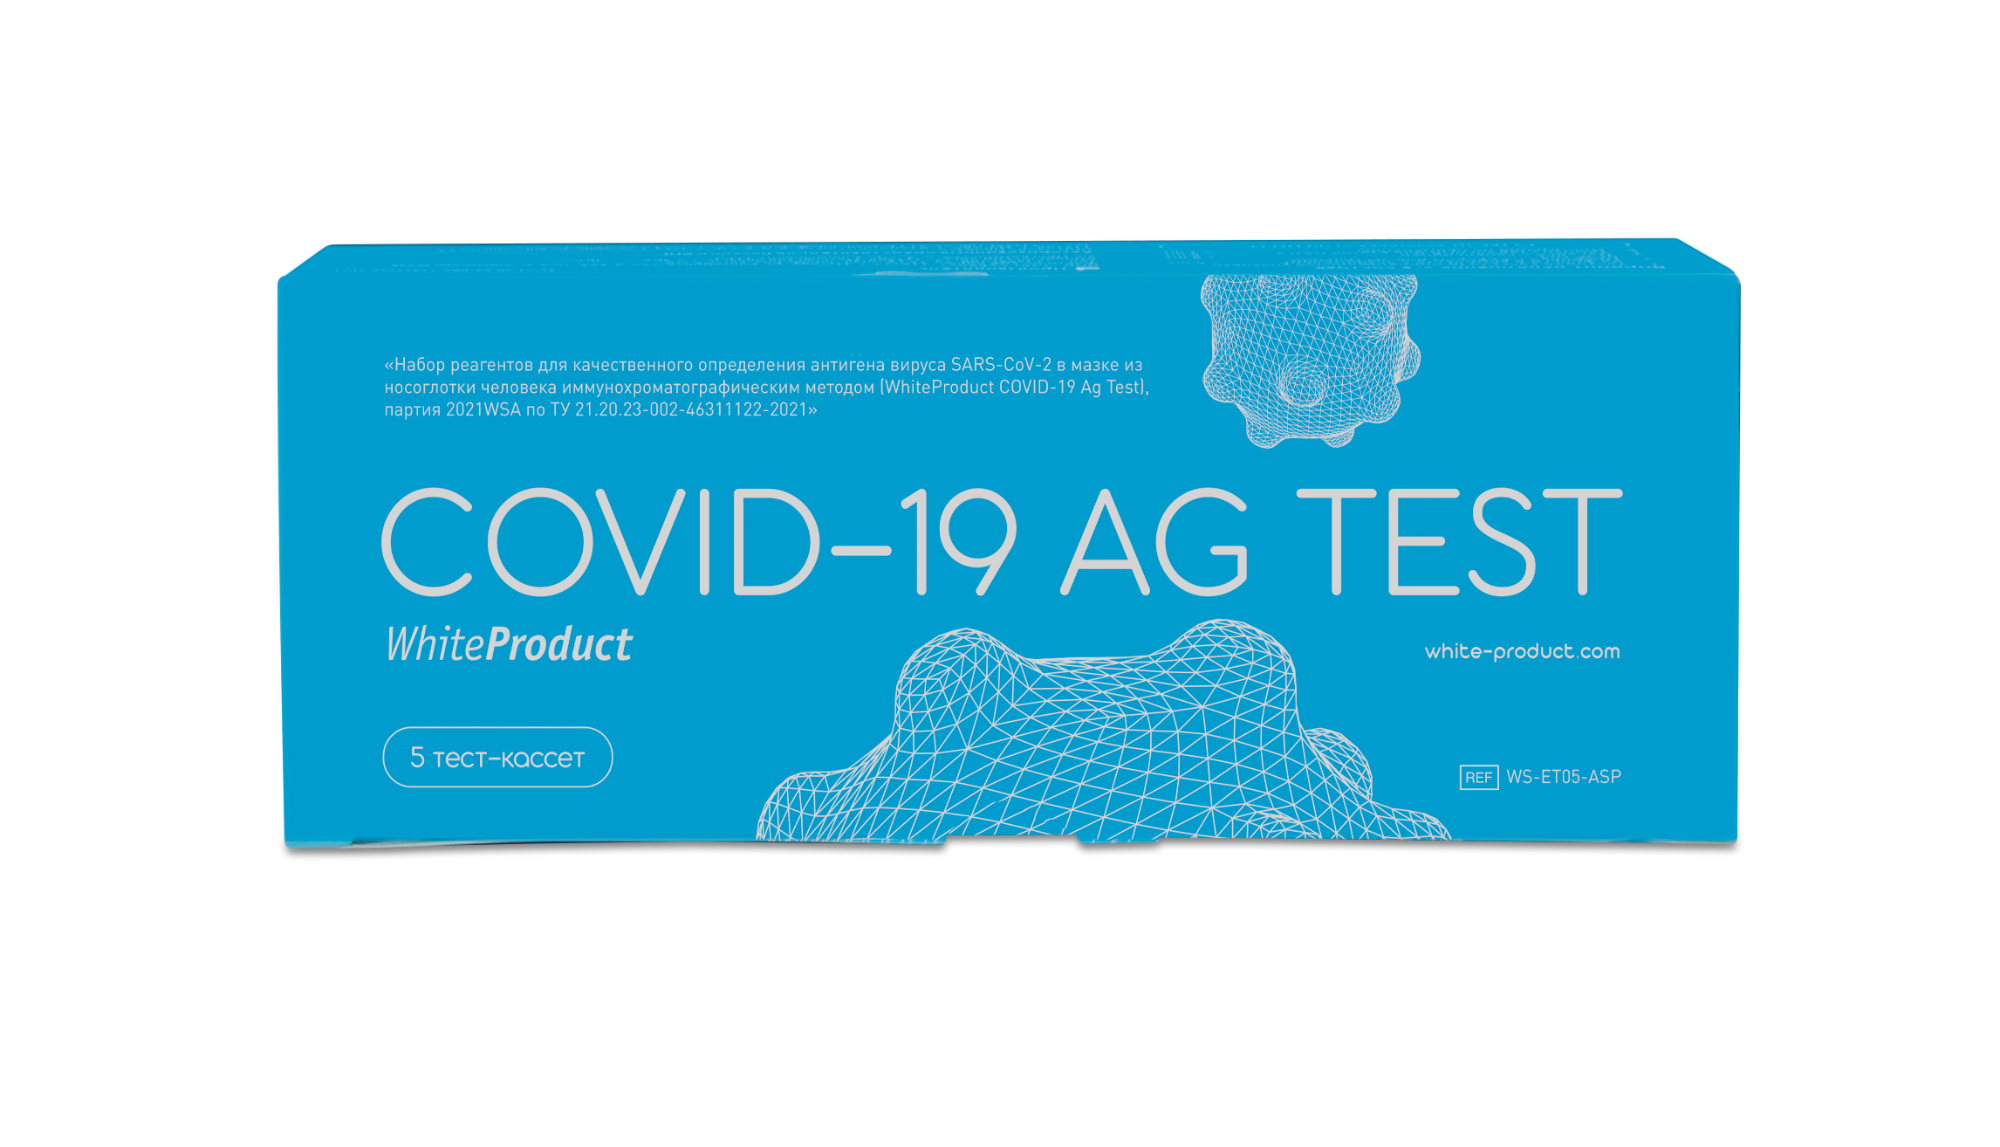 Тест на 5 кг. Тест WHITEPRODUCT Covid-19 AG ИХА. Covid-19 AG Test White product. White product тест на Covid. ЭКТЕСТ Covid-19 AG ИХА, WHITEPRODUCT.